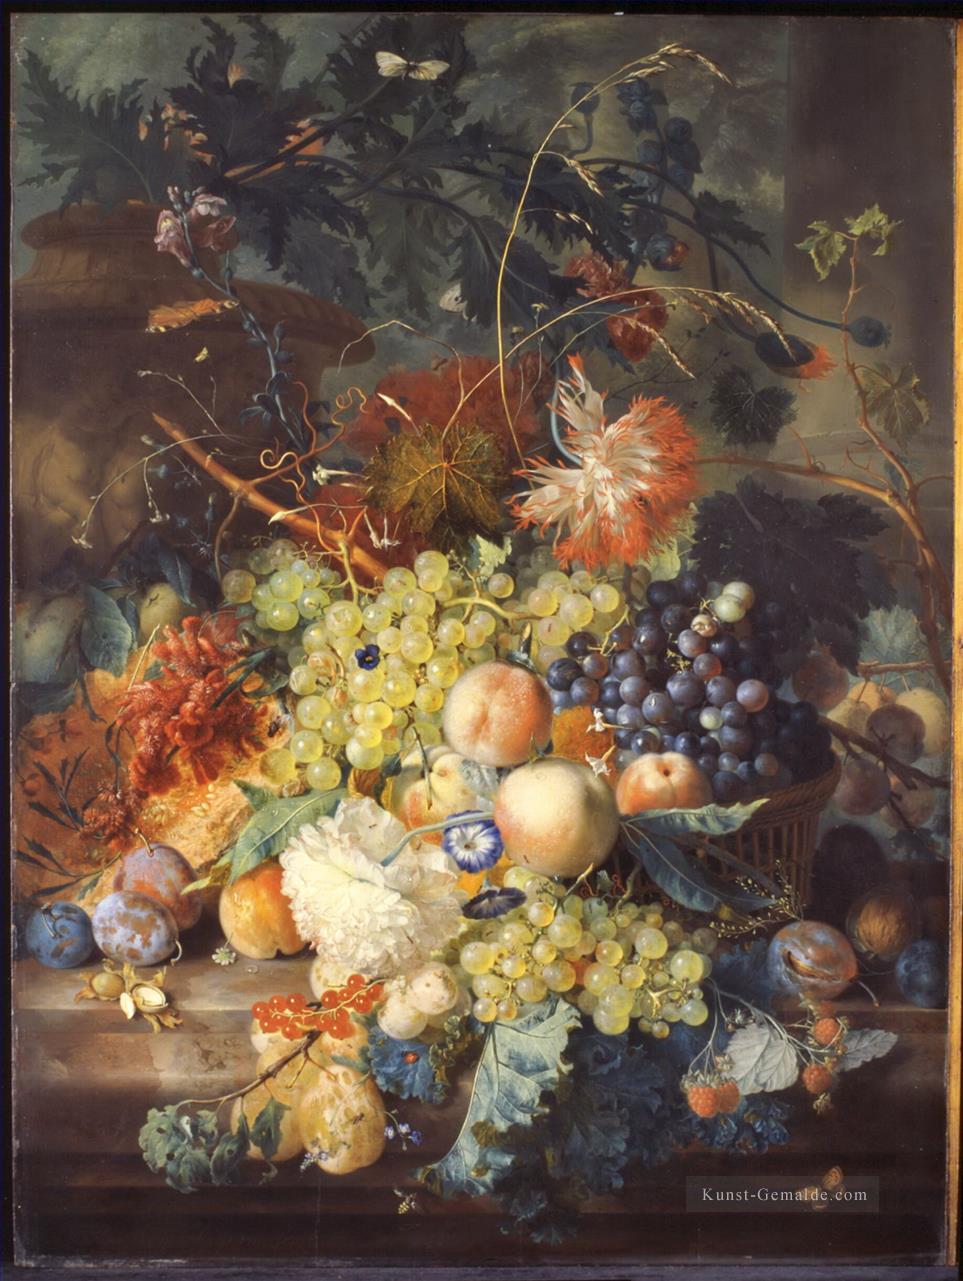 Klassisches Stillleben von Früchten, die in einem Korb aufgehäuft wurden Jan van Huysum Ölgemälde